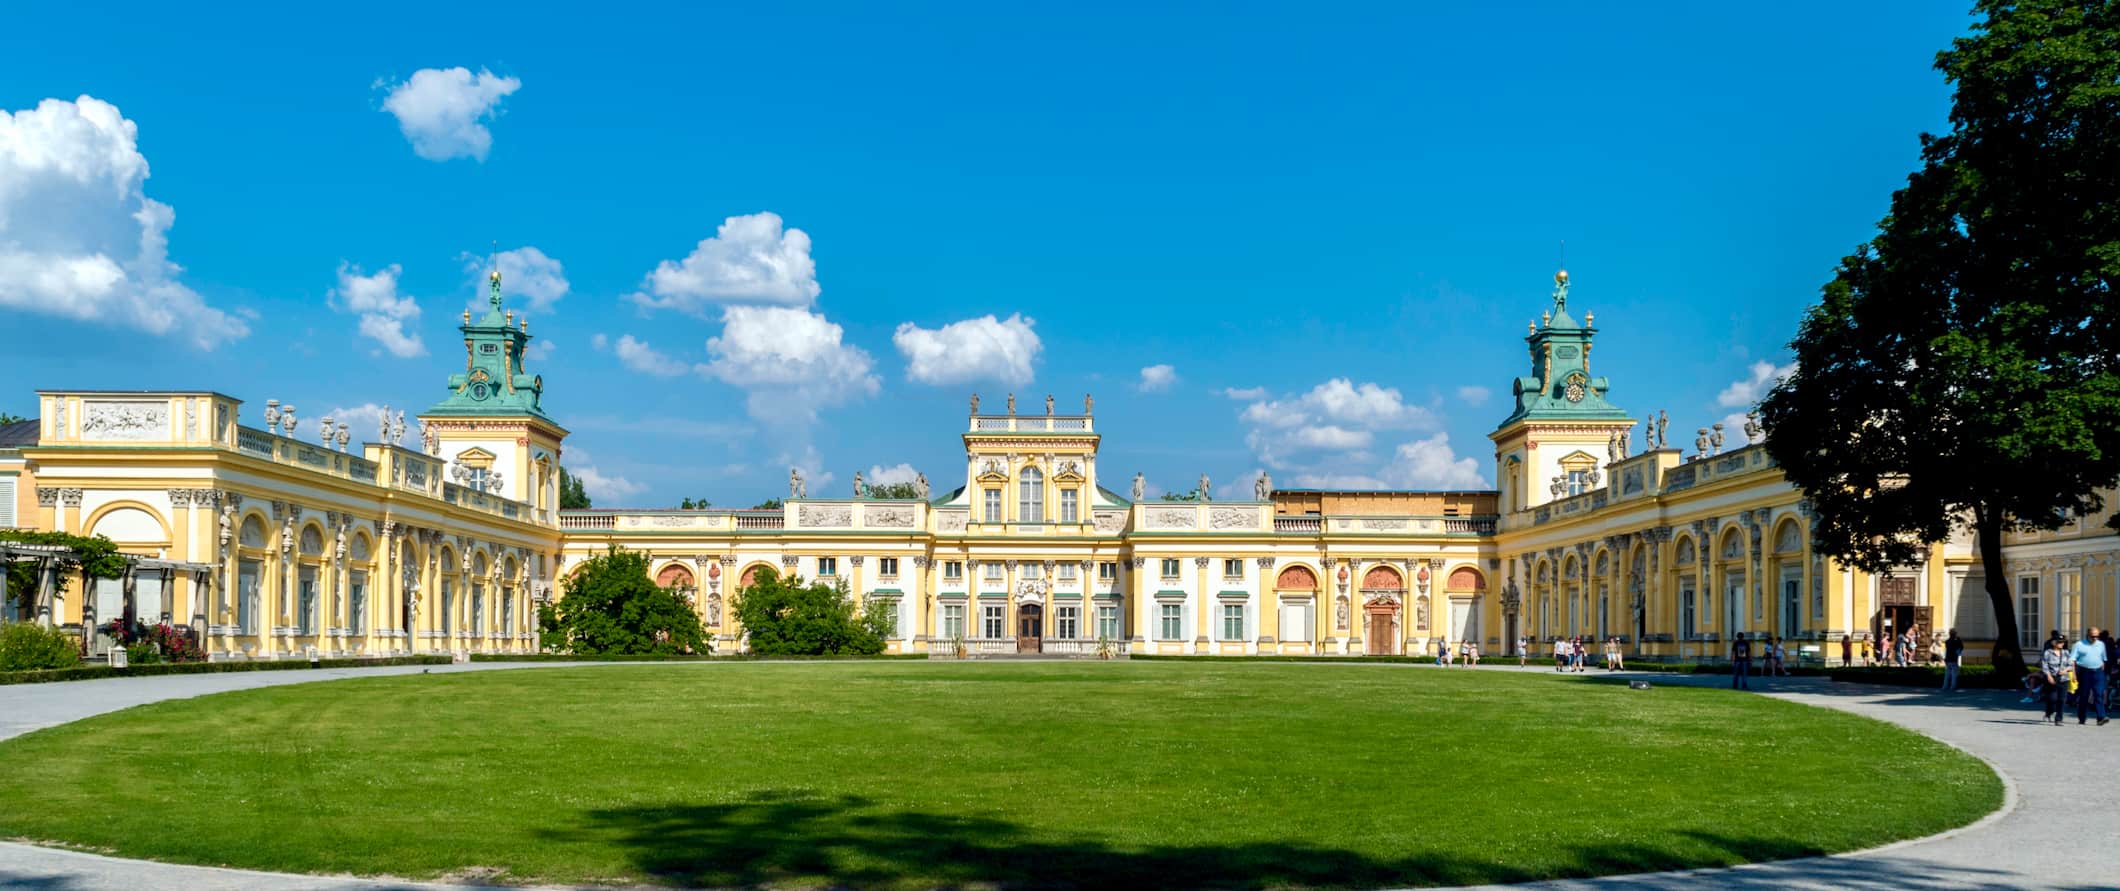 Amplo palácio real cercado por grama verde em um dia ensolarado em Varsóvia, Polônia